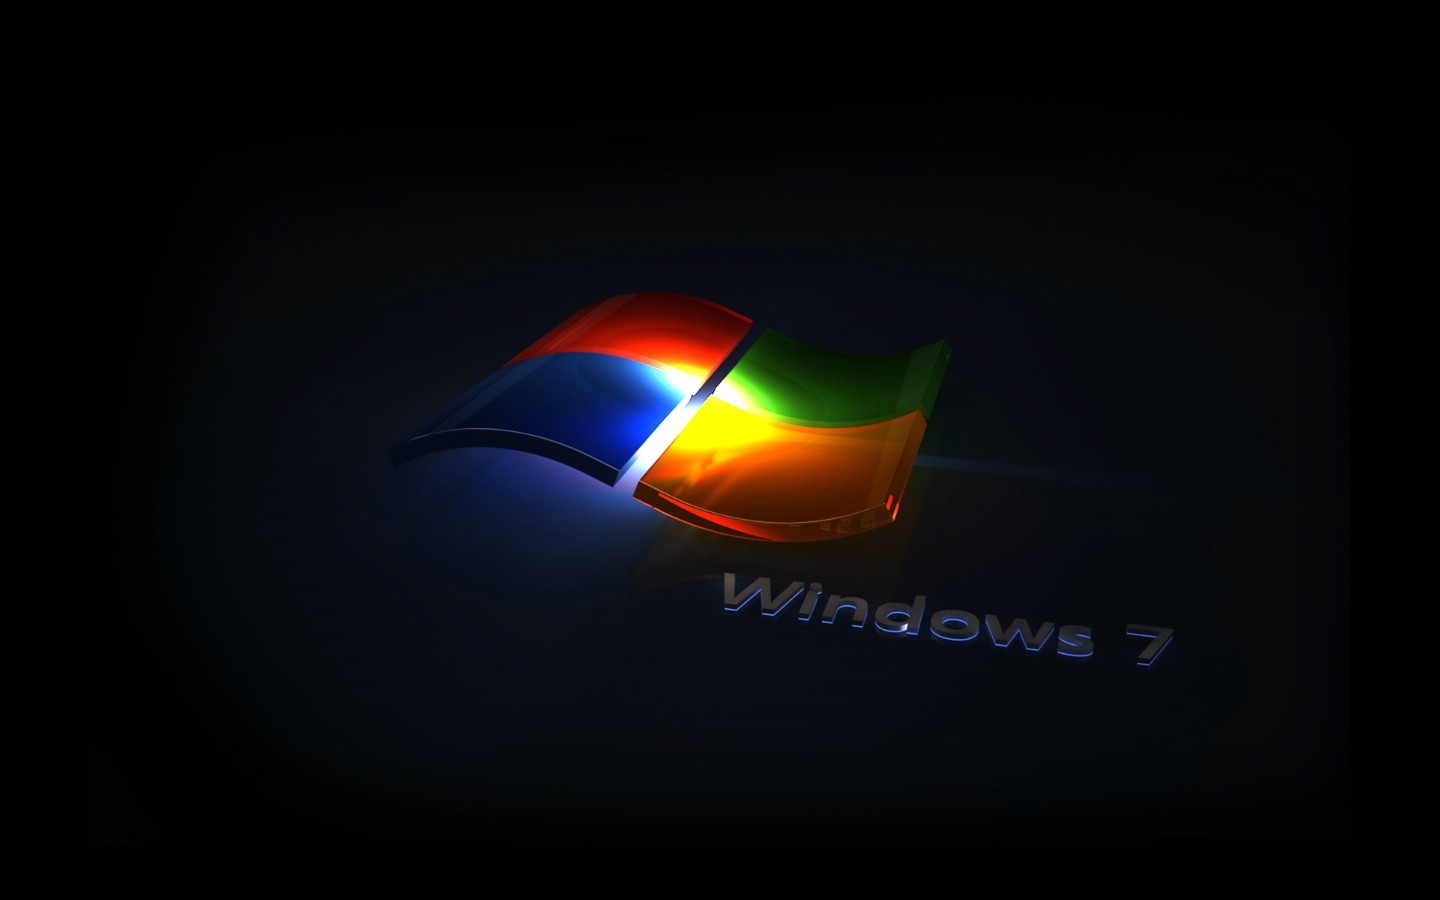 壁纸1440x900Windows7 5 18壁纸 Windows7壁纸 Windows7图片 Windows7素材 系统壁纸 系统图库 系统图片素材桌面壁纸